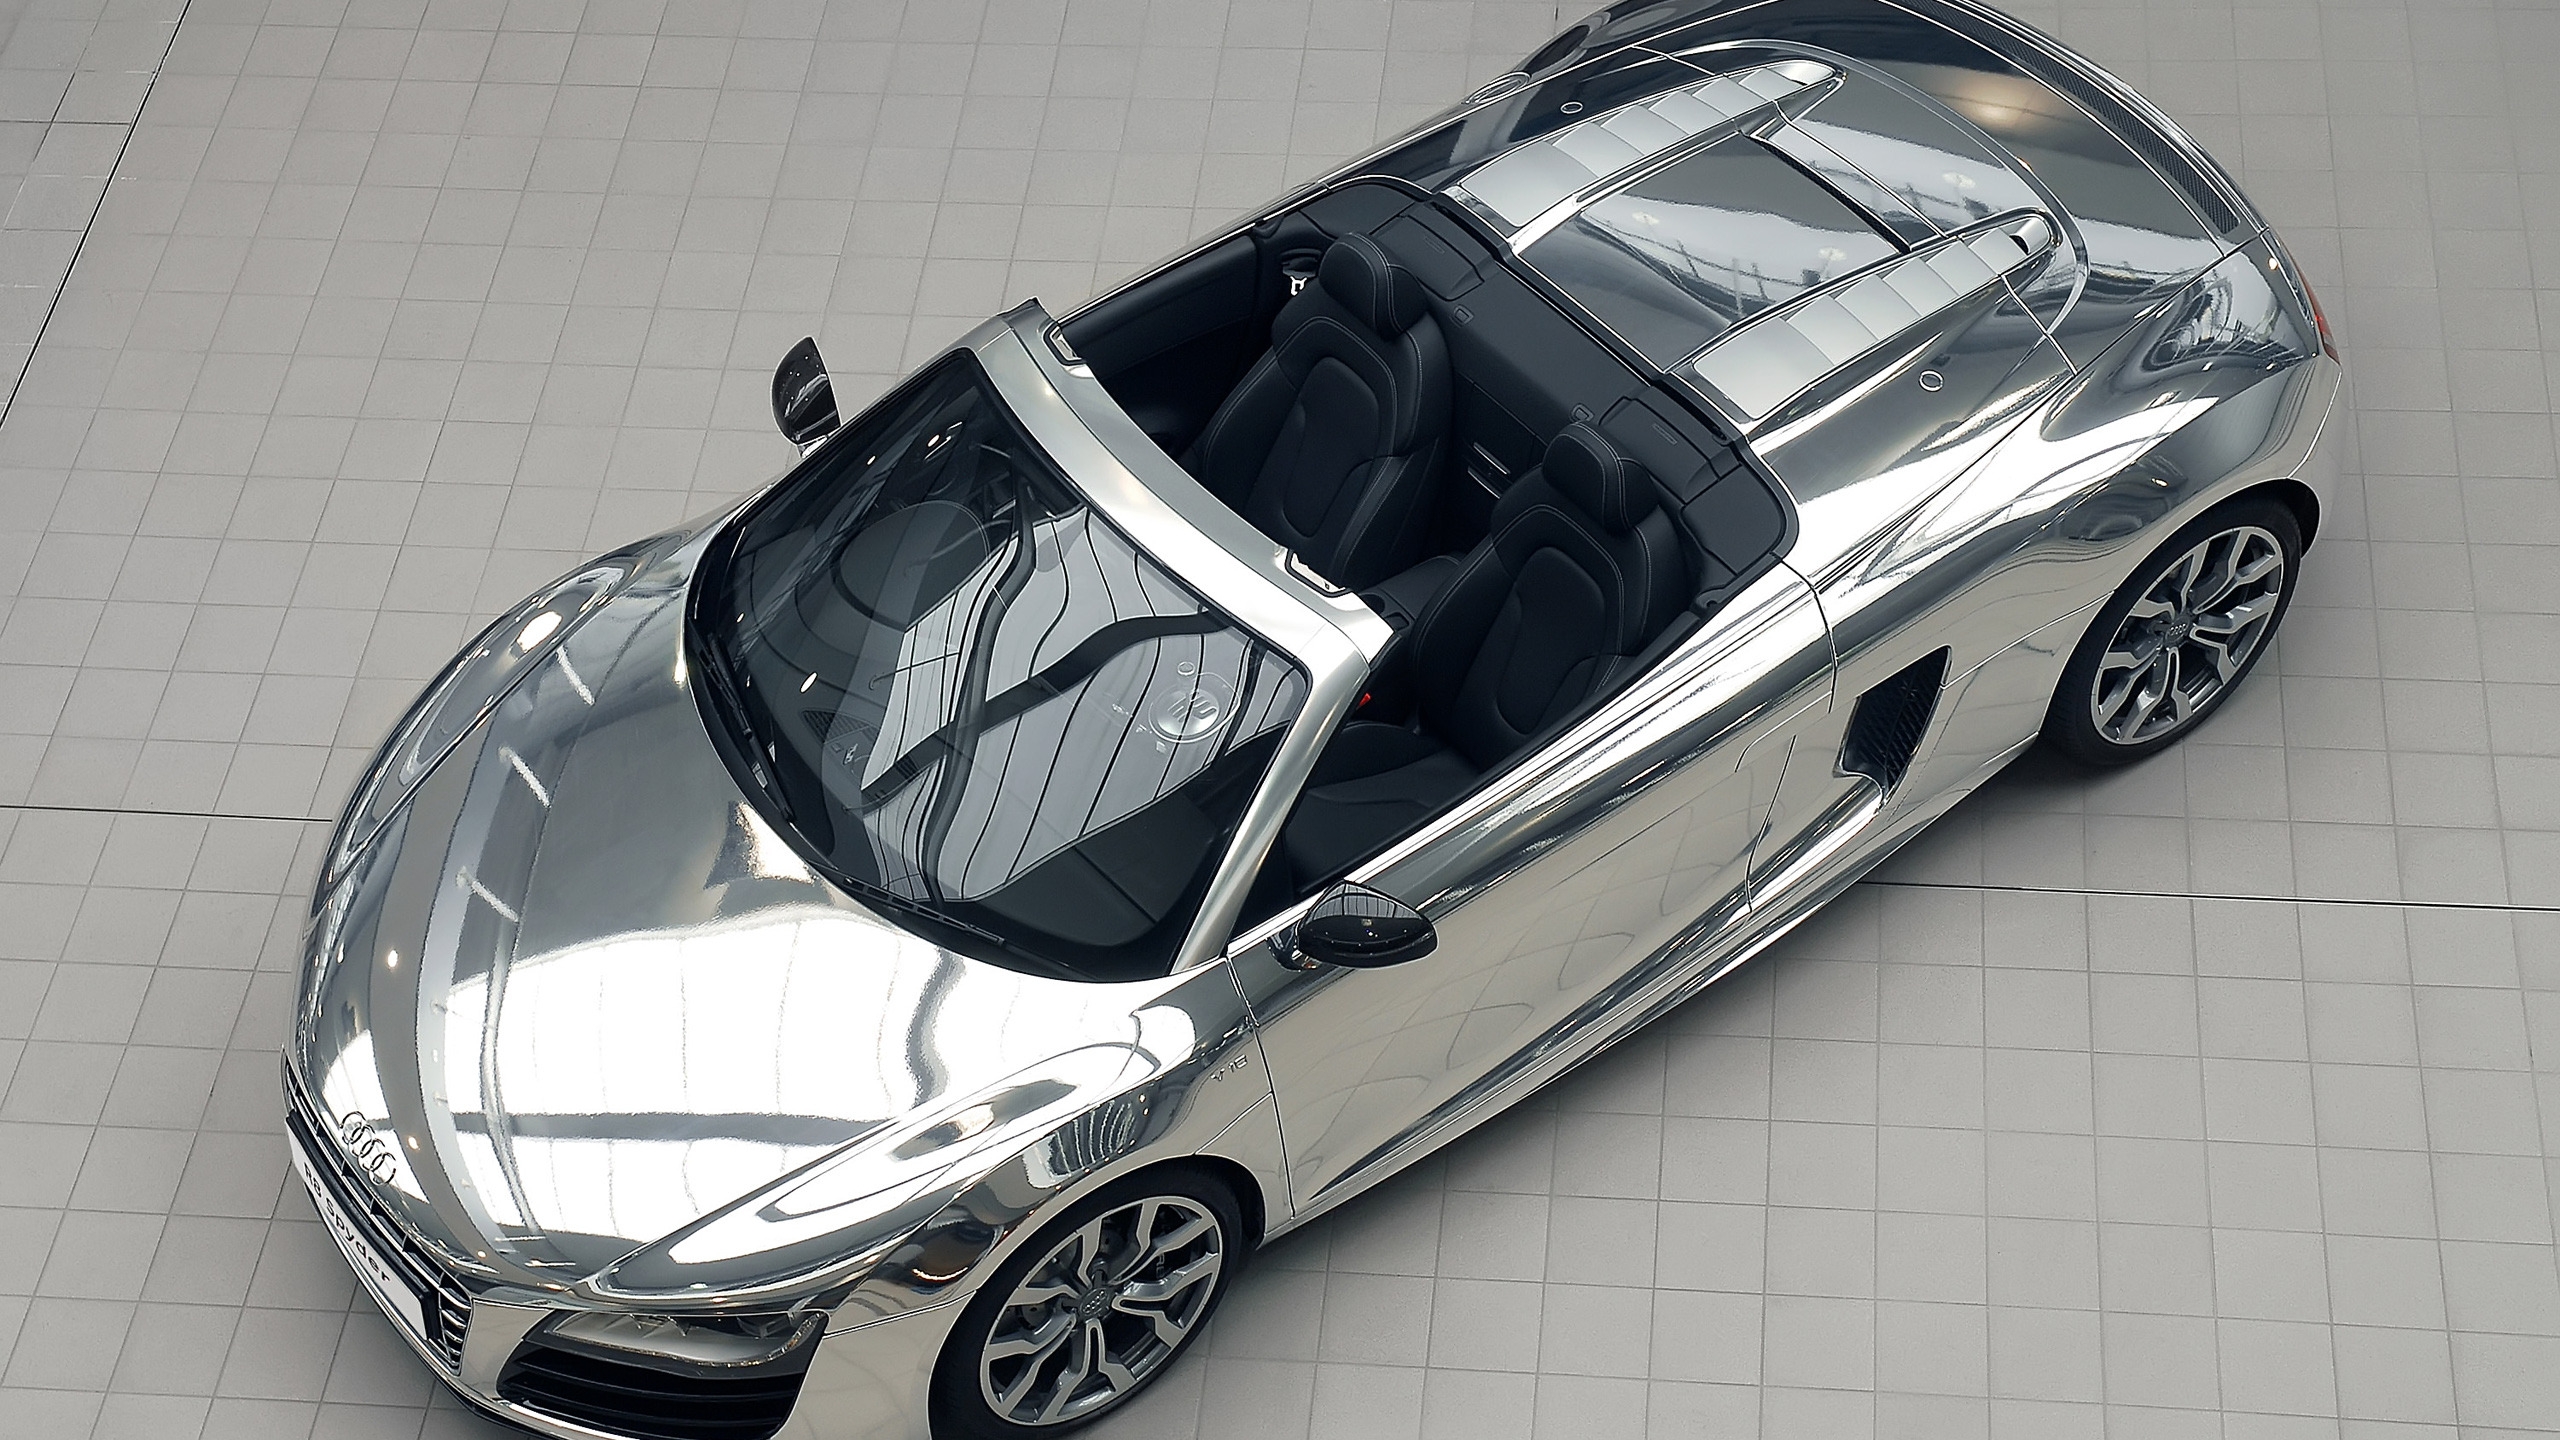 Audi R8 V10 Spyder Chrome for 2560x1440 HDTV resolution